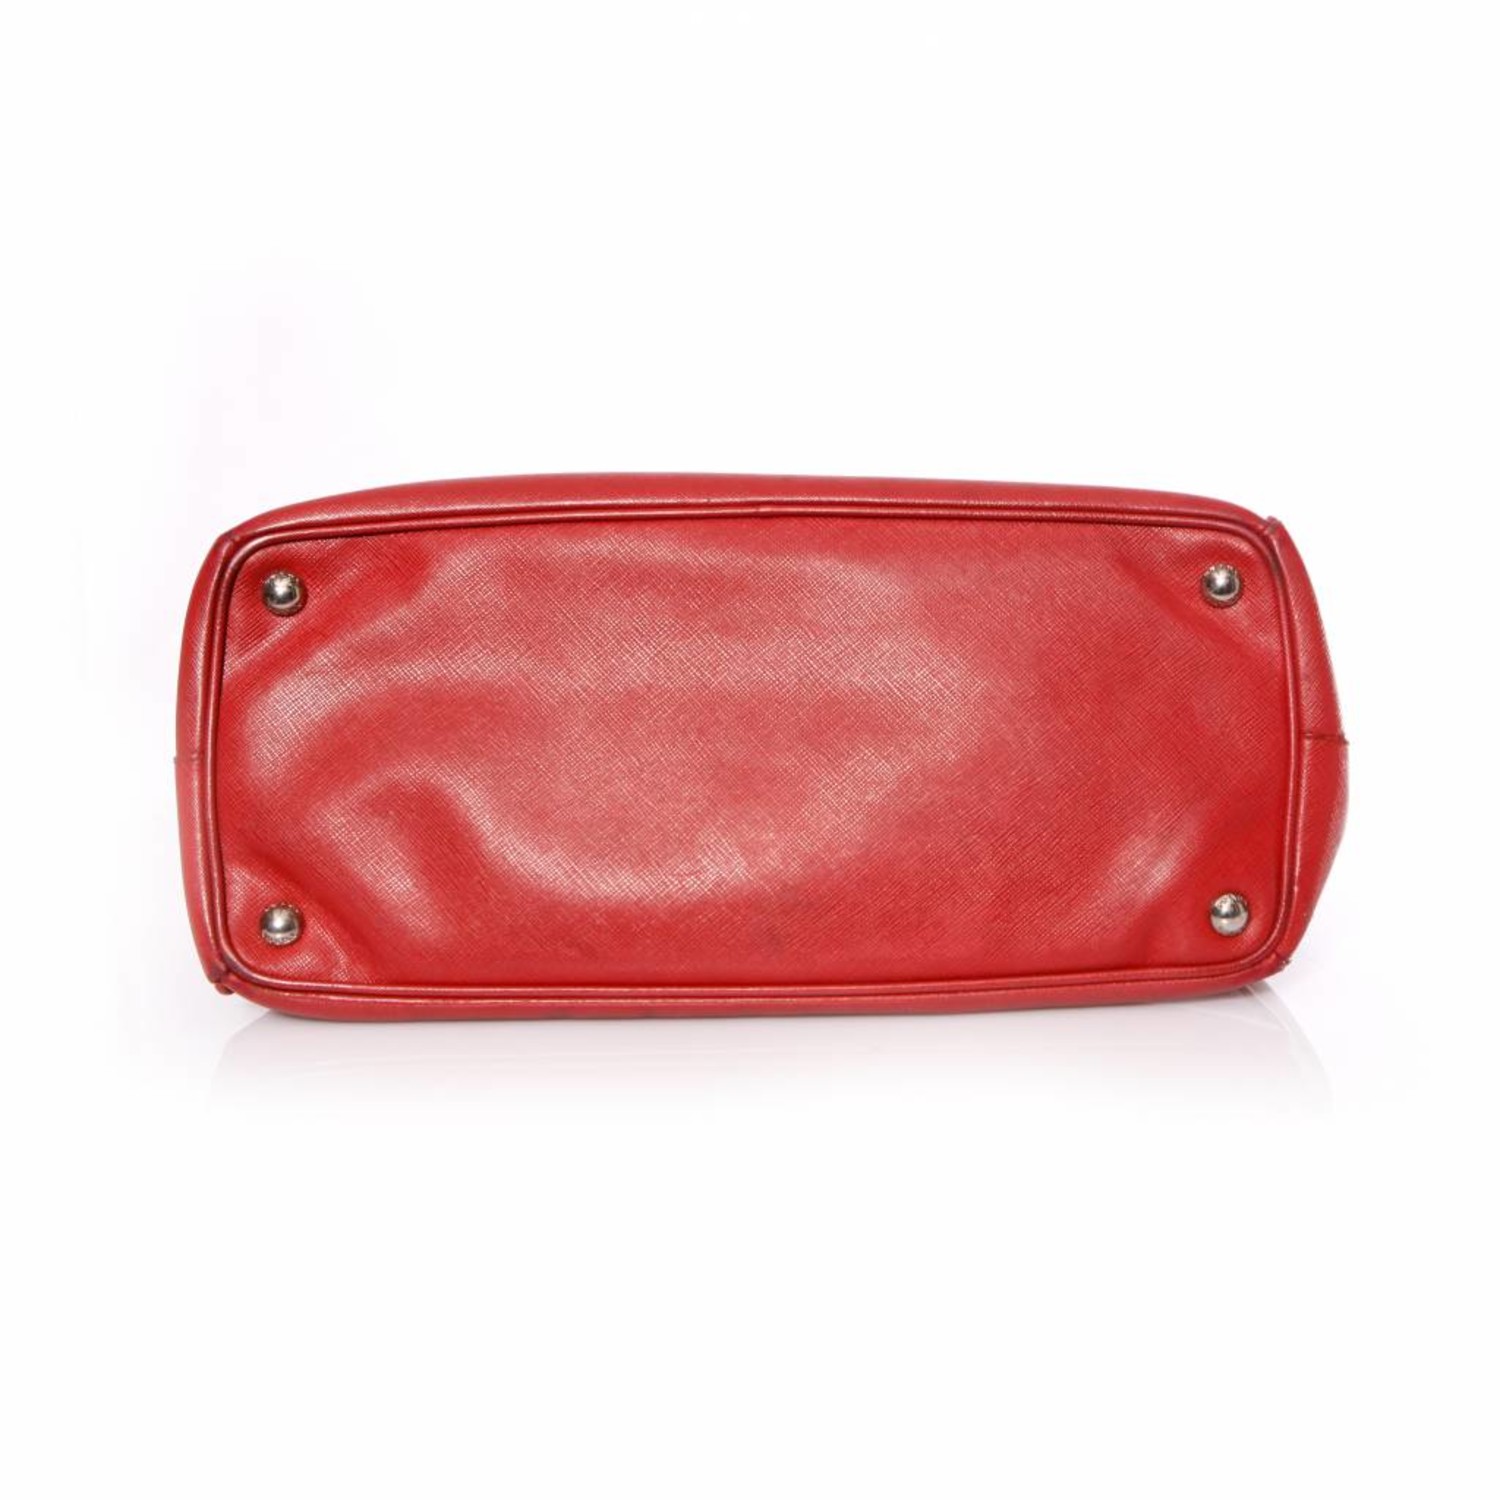 Prada Red Saffiano Bag